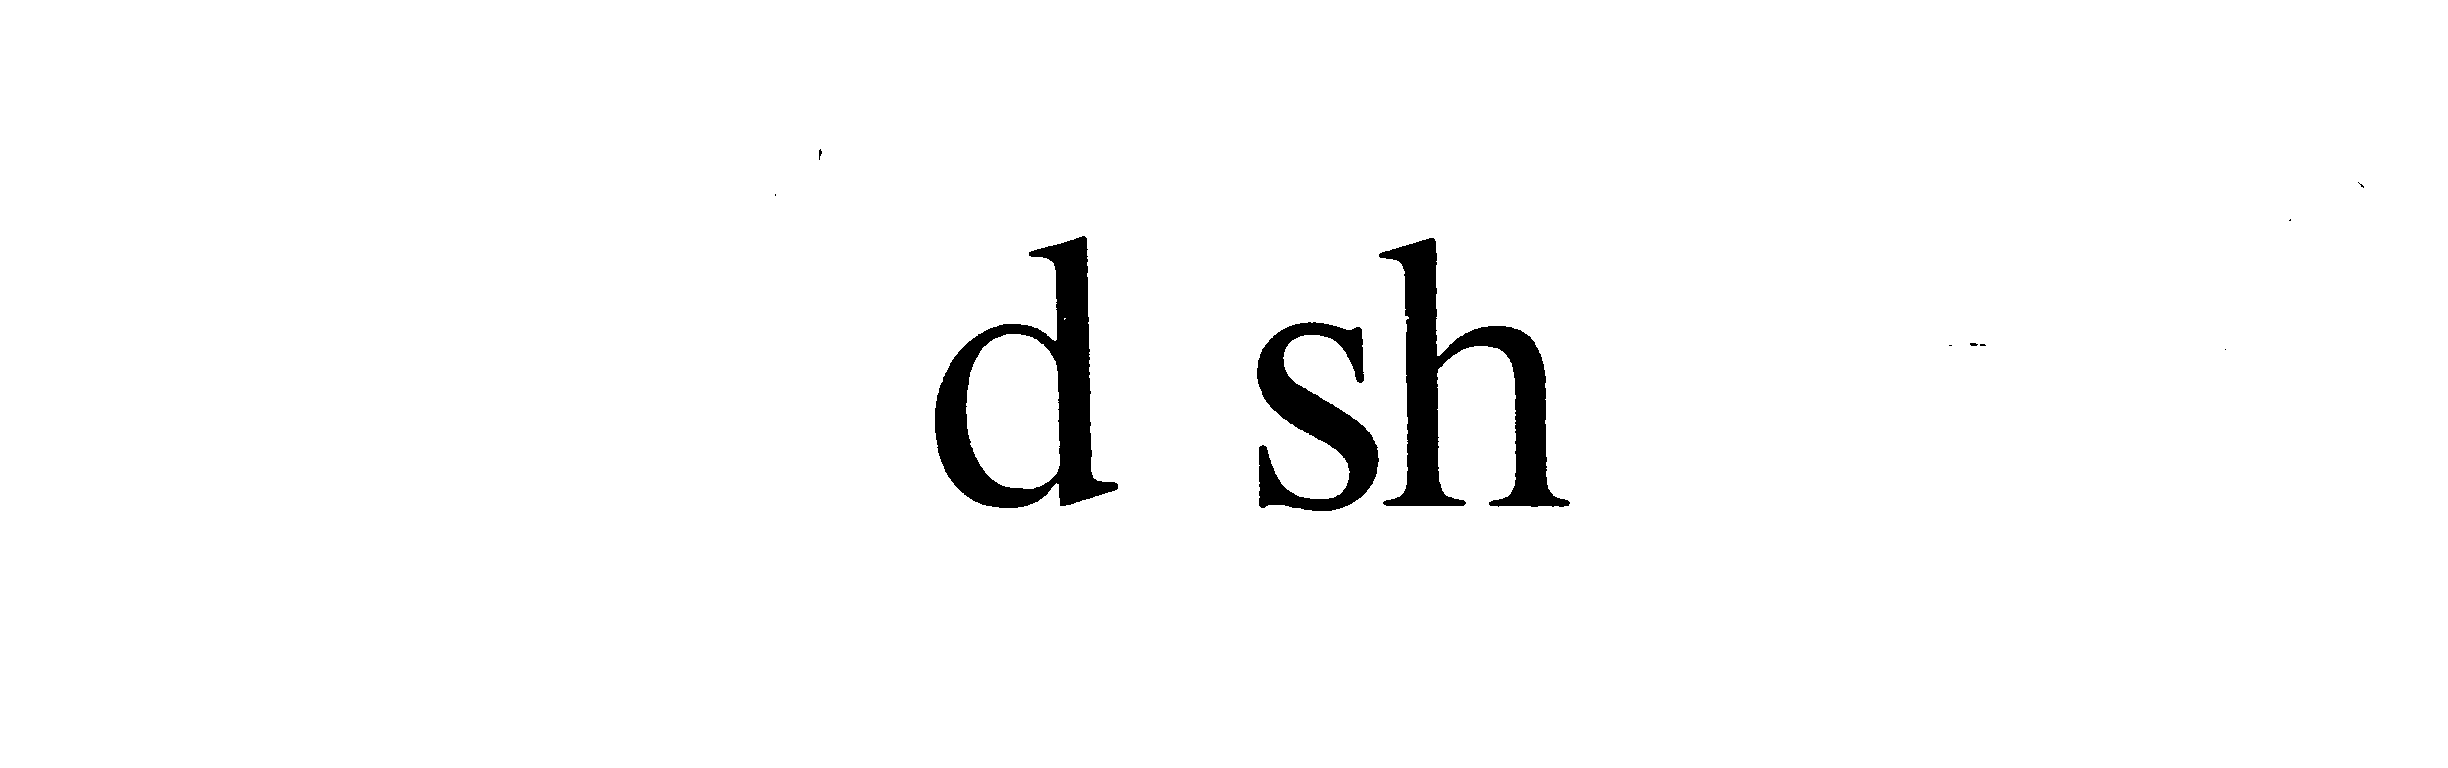  D SH